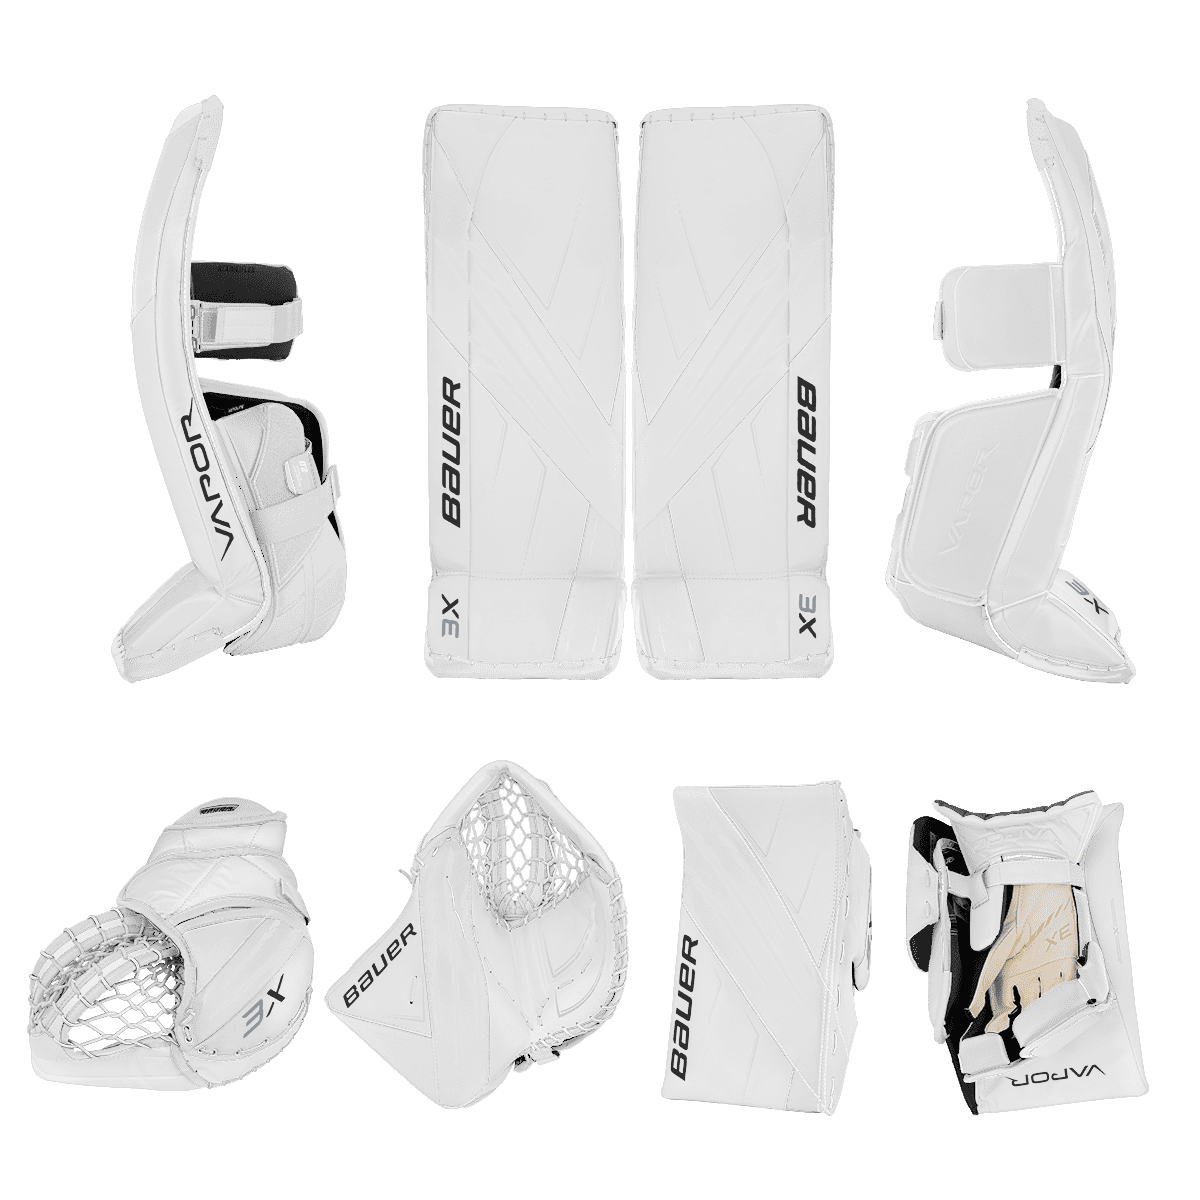 Bauer Vapor 3X Goalie Equipment - Custom Design - Senior White/Default Inspiration